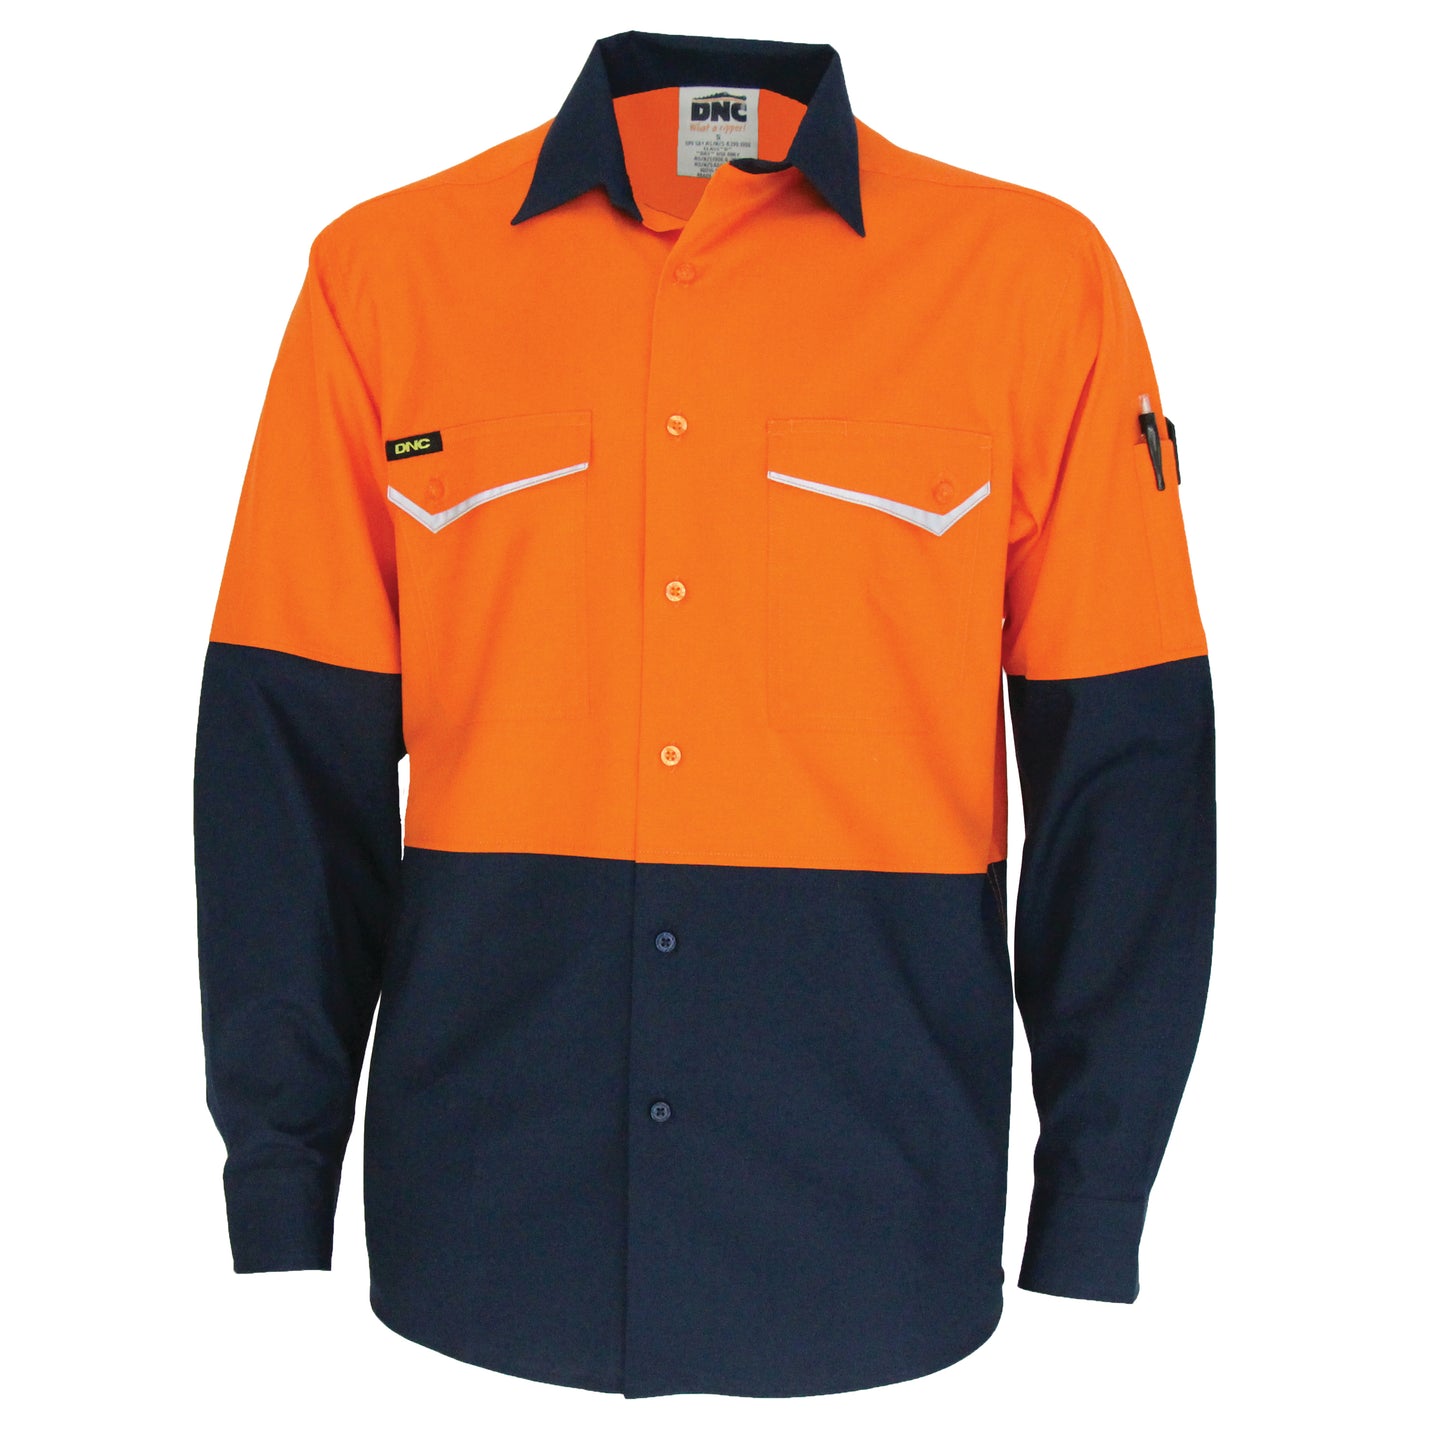 DNC HIVIS D/N 2 Tone Drill Shirt 3536 - Star Uniforms Australia